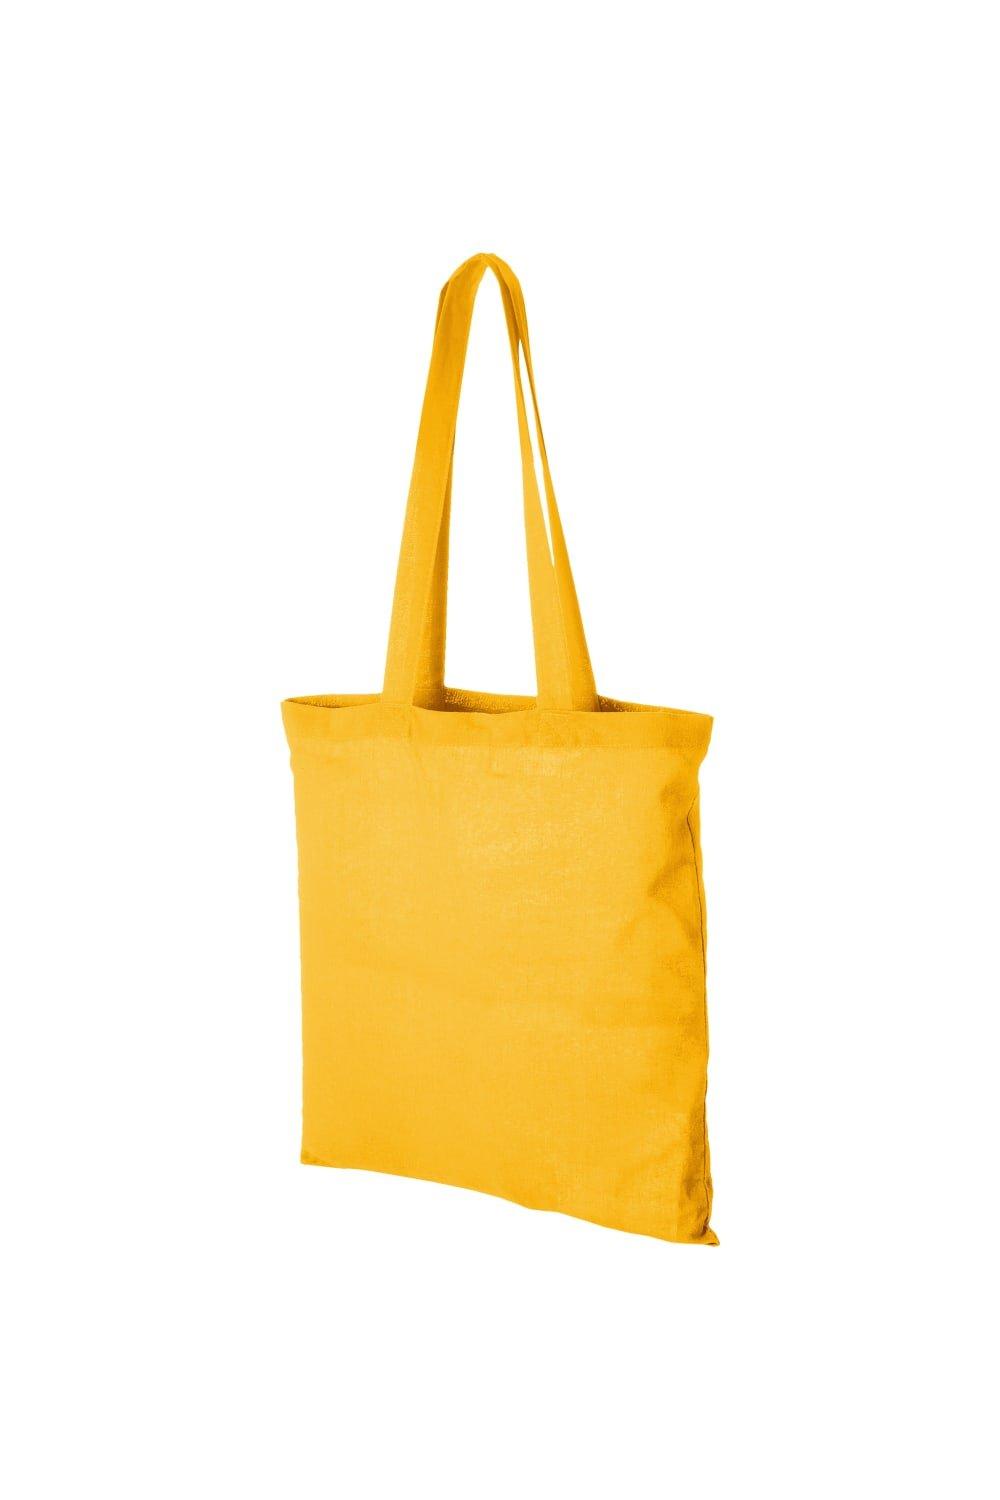 Хлопковая сумка-тоут Carolina Bullet, желтый мешочек сумка подарочный винового года каролина